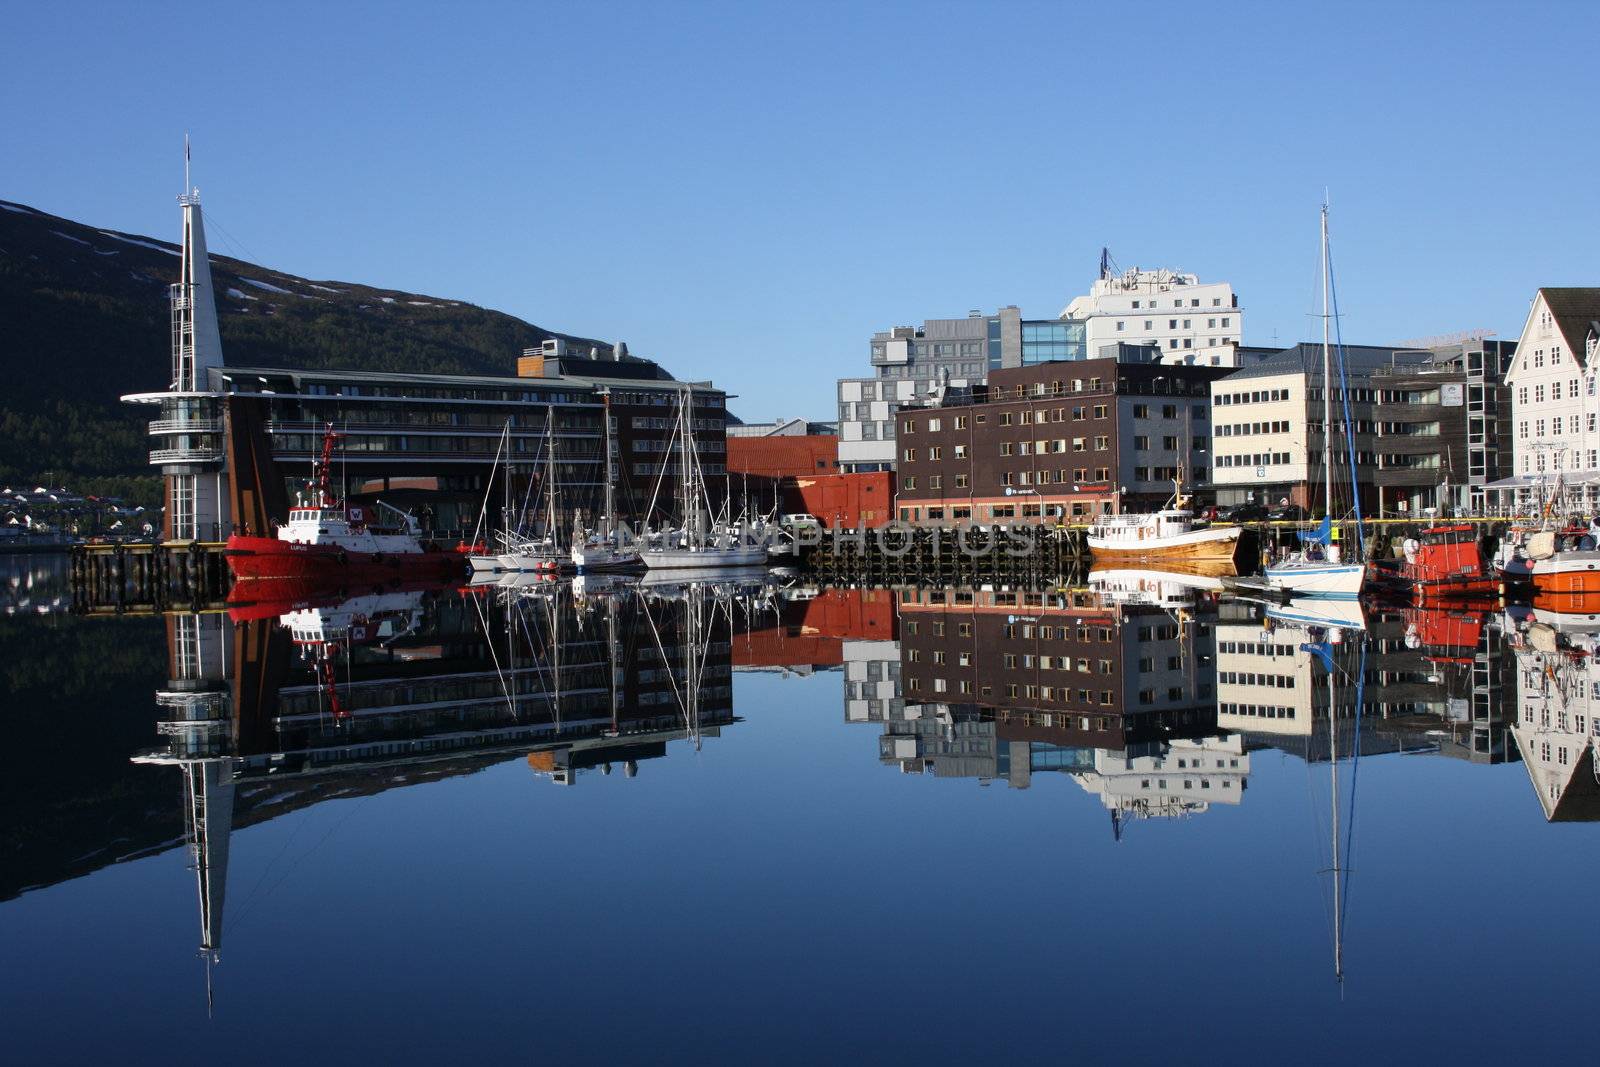 This is a beautiful picture of the harbour in Tromsø. Et pent bilde av havne området i Tromsø
